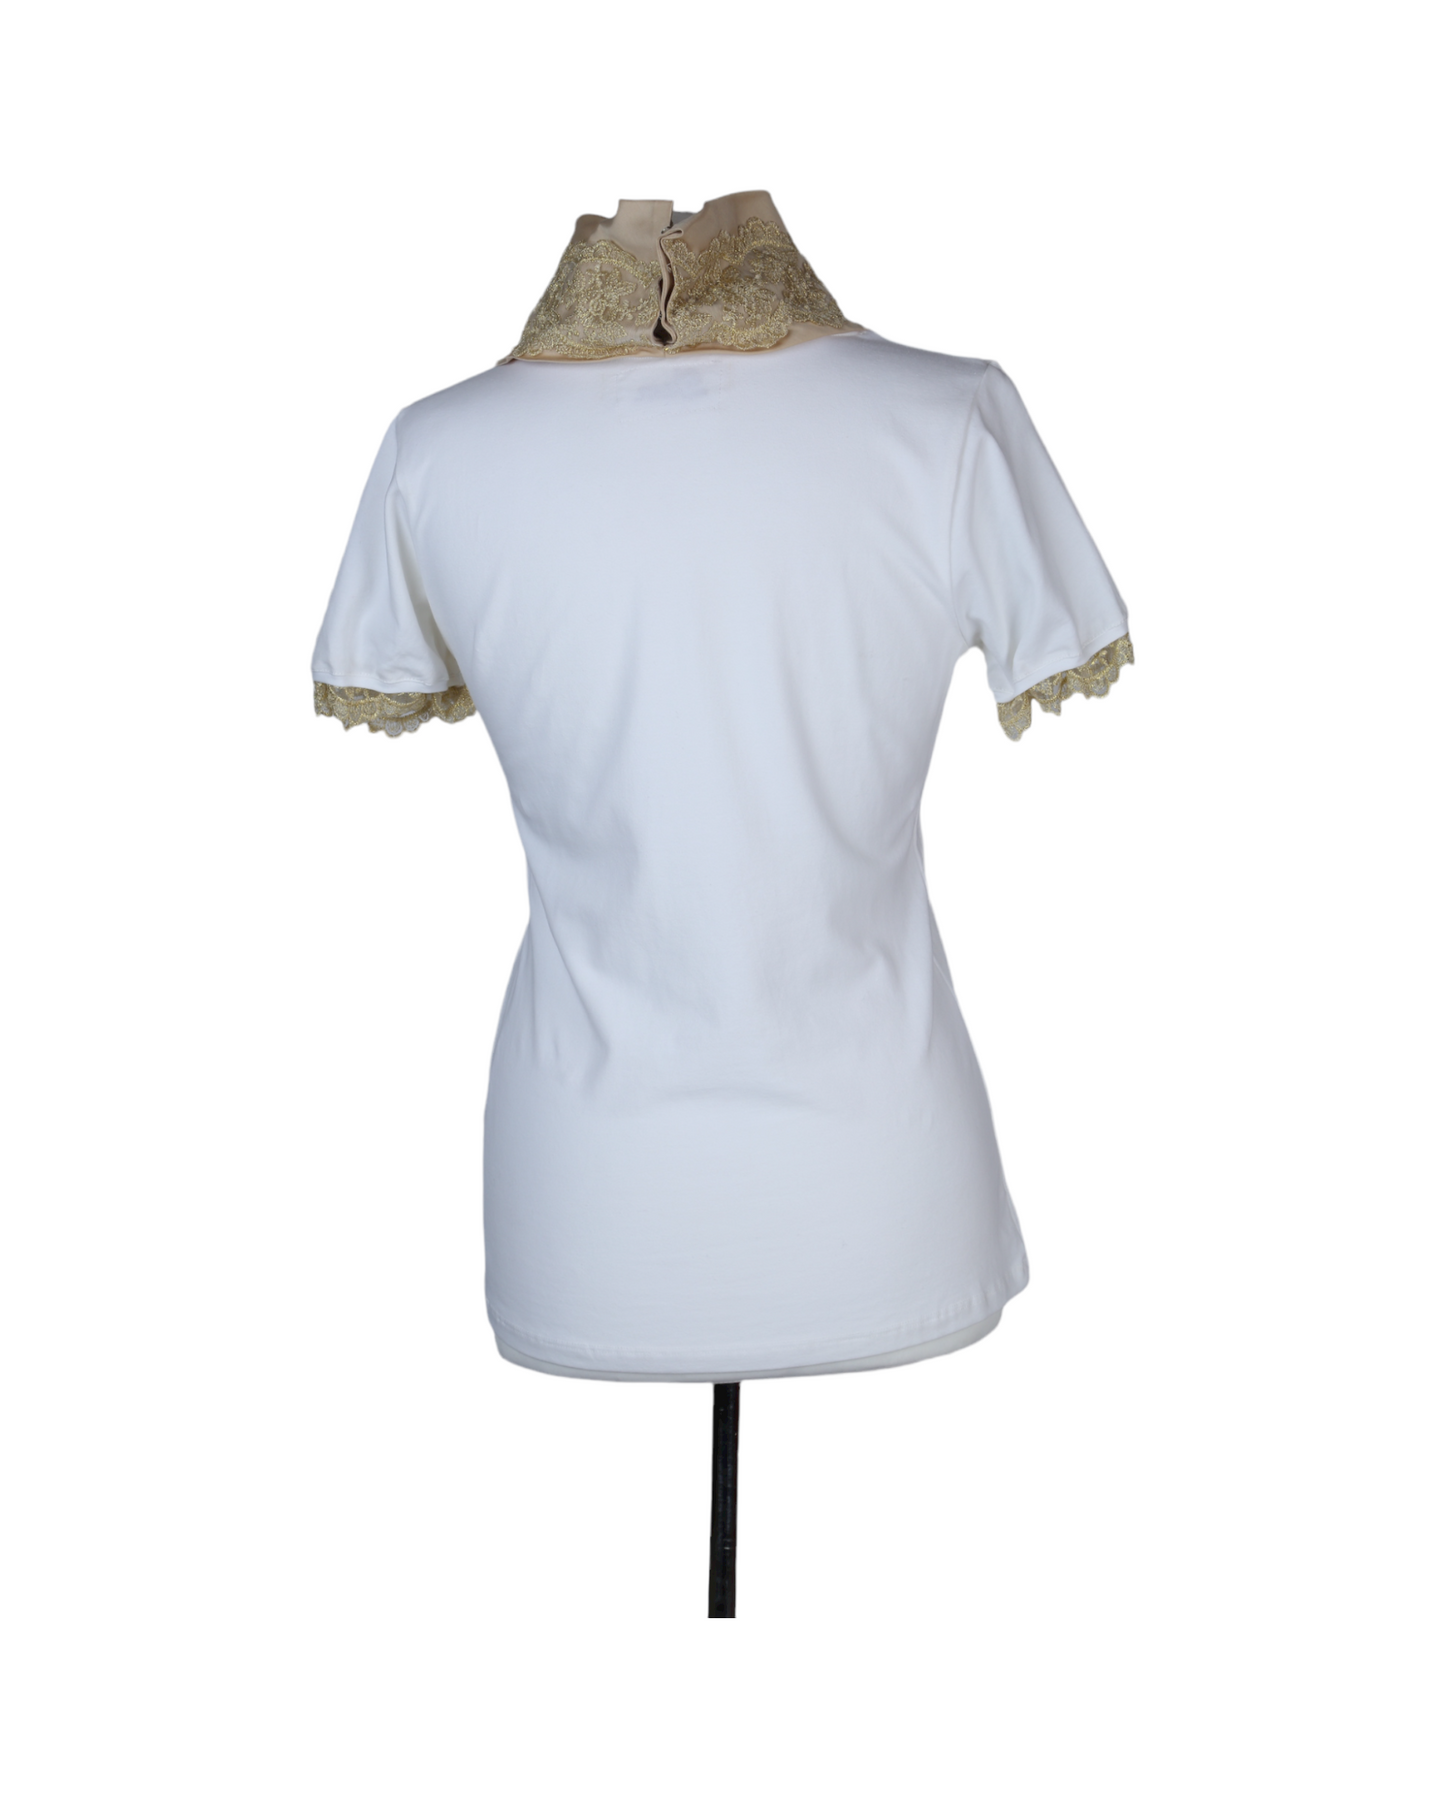 LUM Beige Embroidered T-Shirt